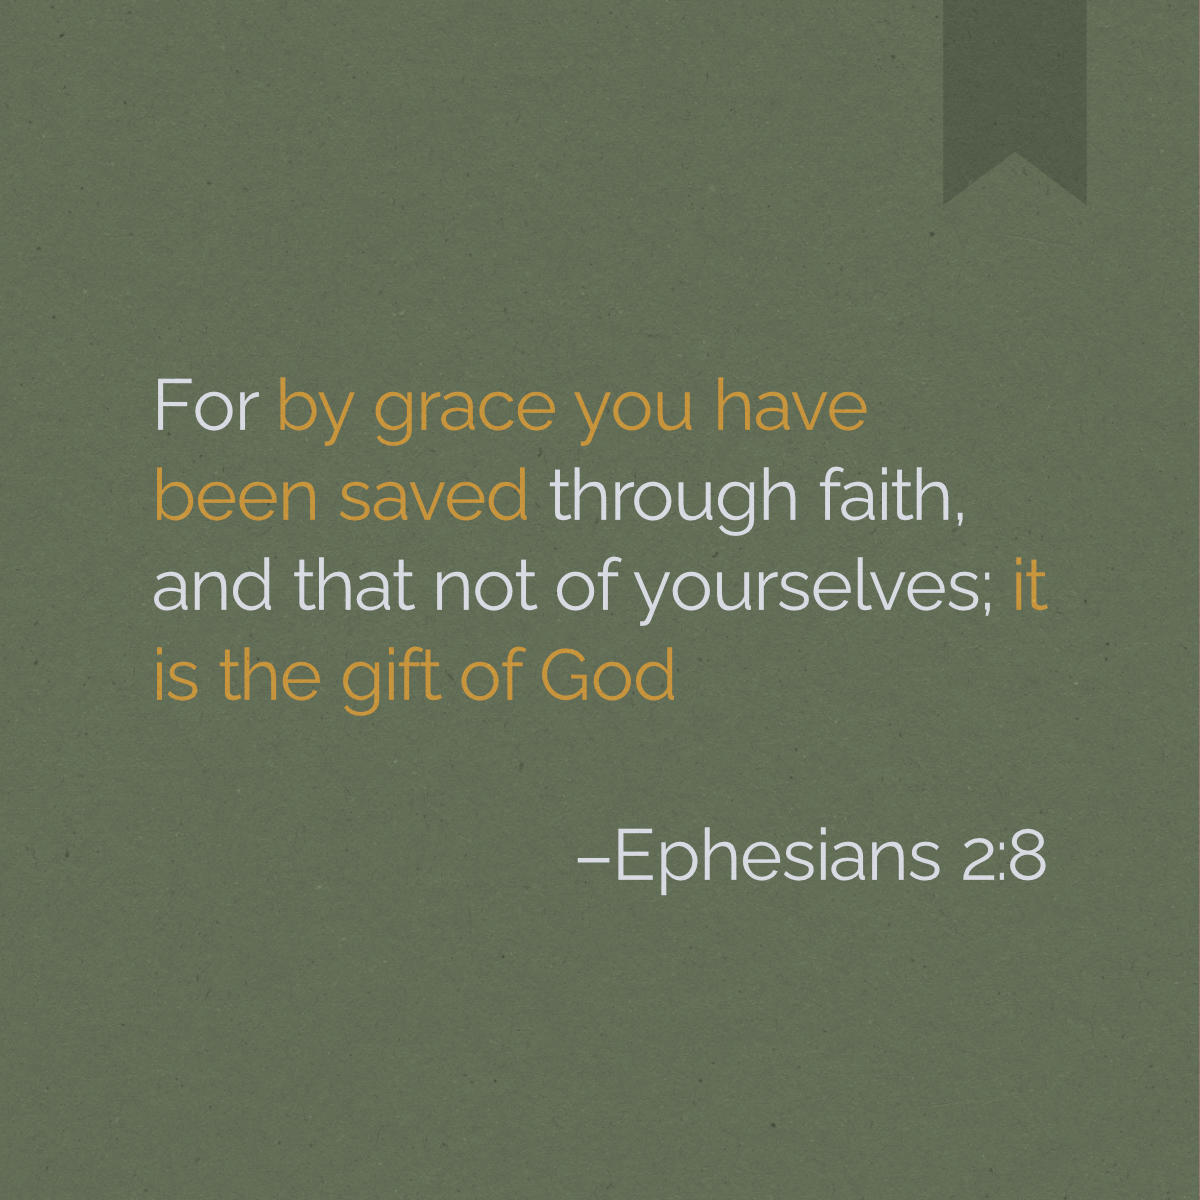 By grace